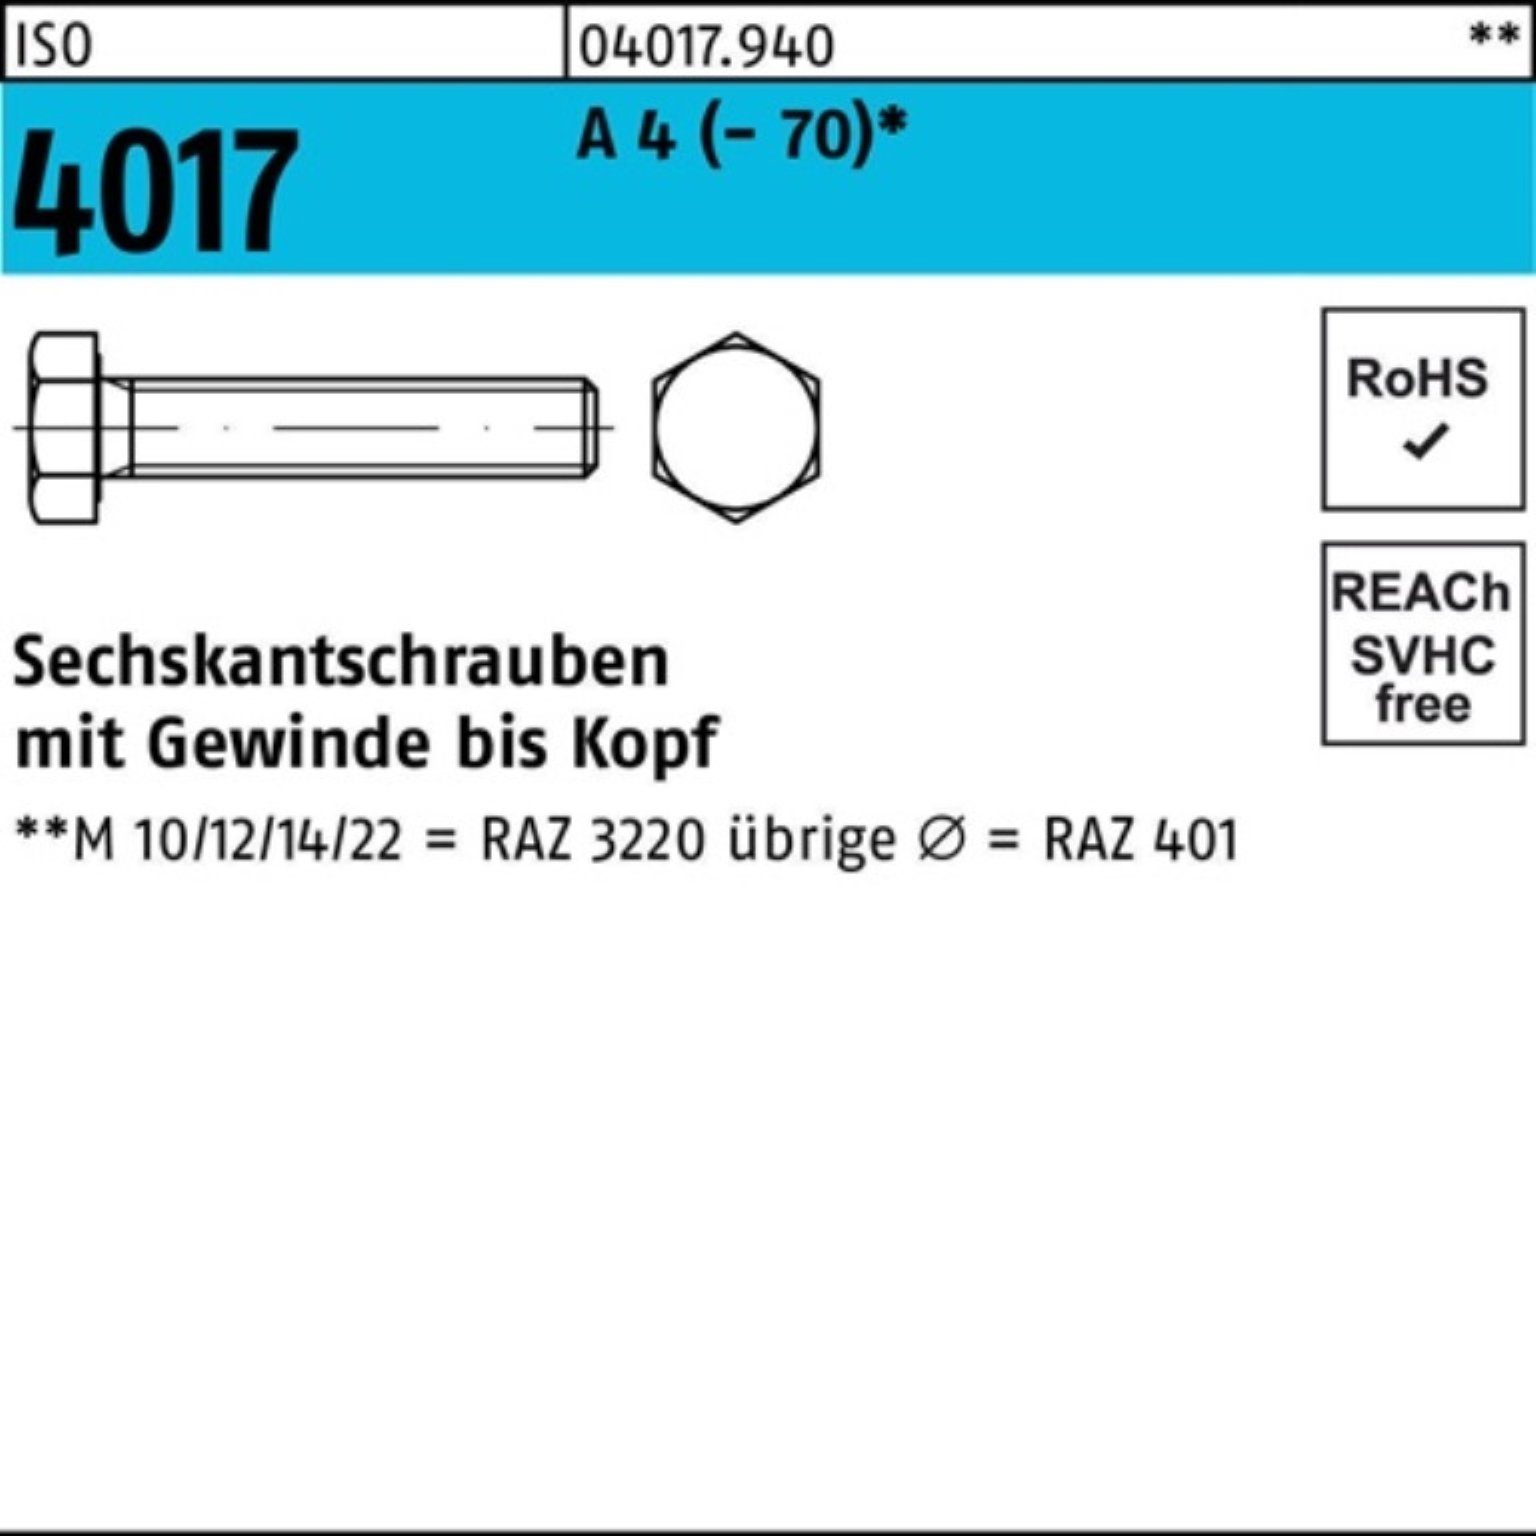 Bufab Sechskantschraube 100er Pack Sechskantschraube ISO 4017 VG M27x 100 A 4 (70) 1 Stück